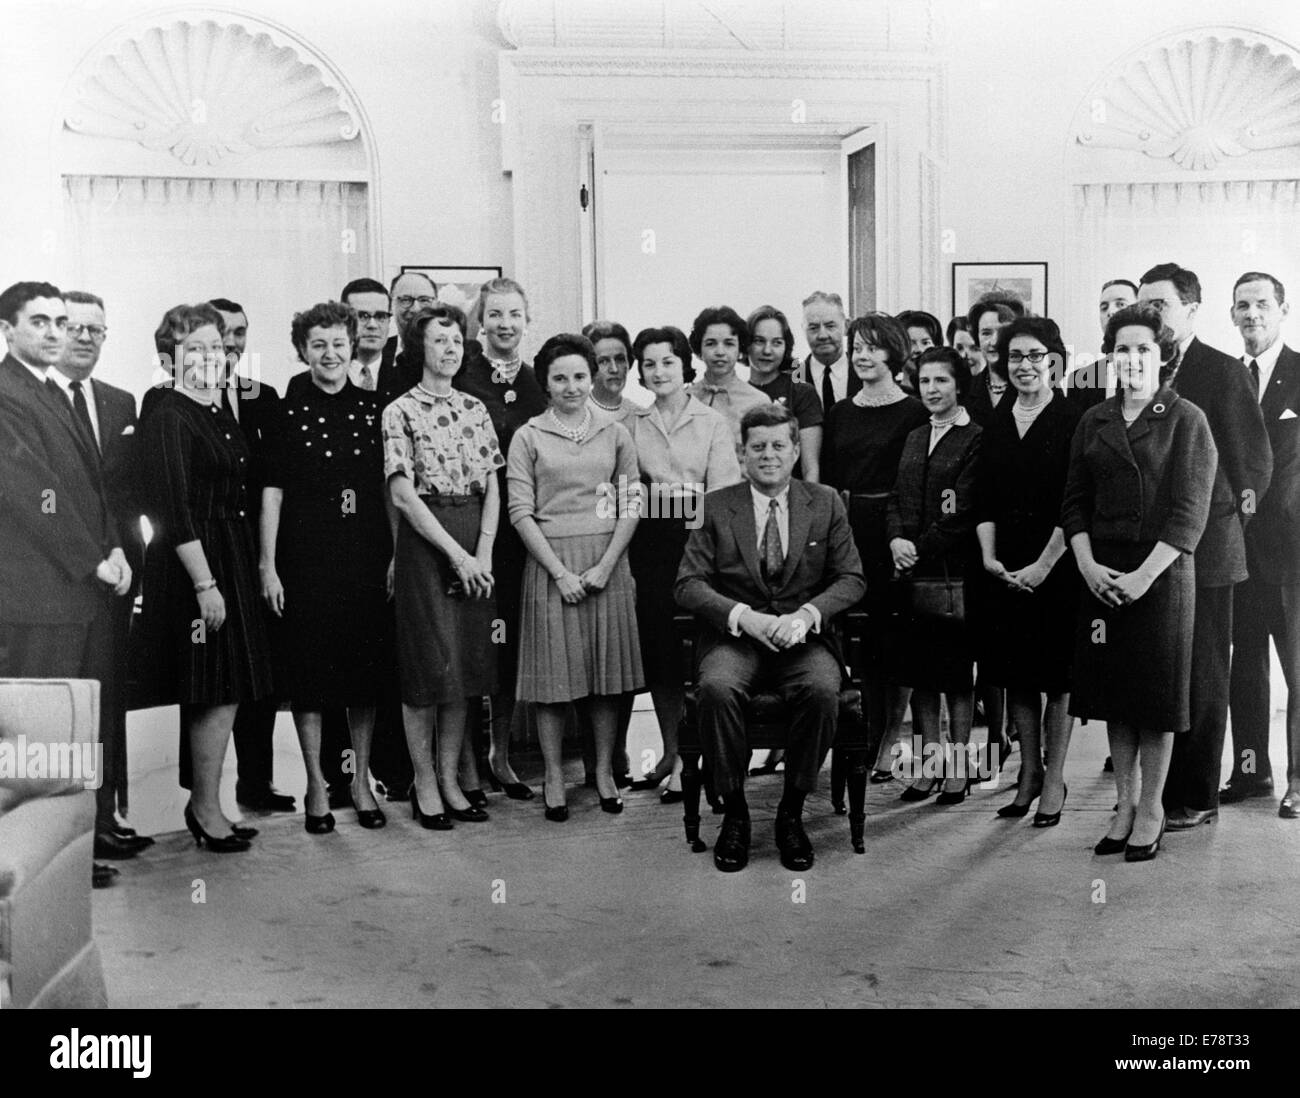 Präsident John f. Kennedy mit seinem Stab des weißen Hauses Stockfoto